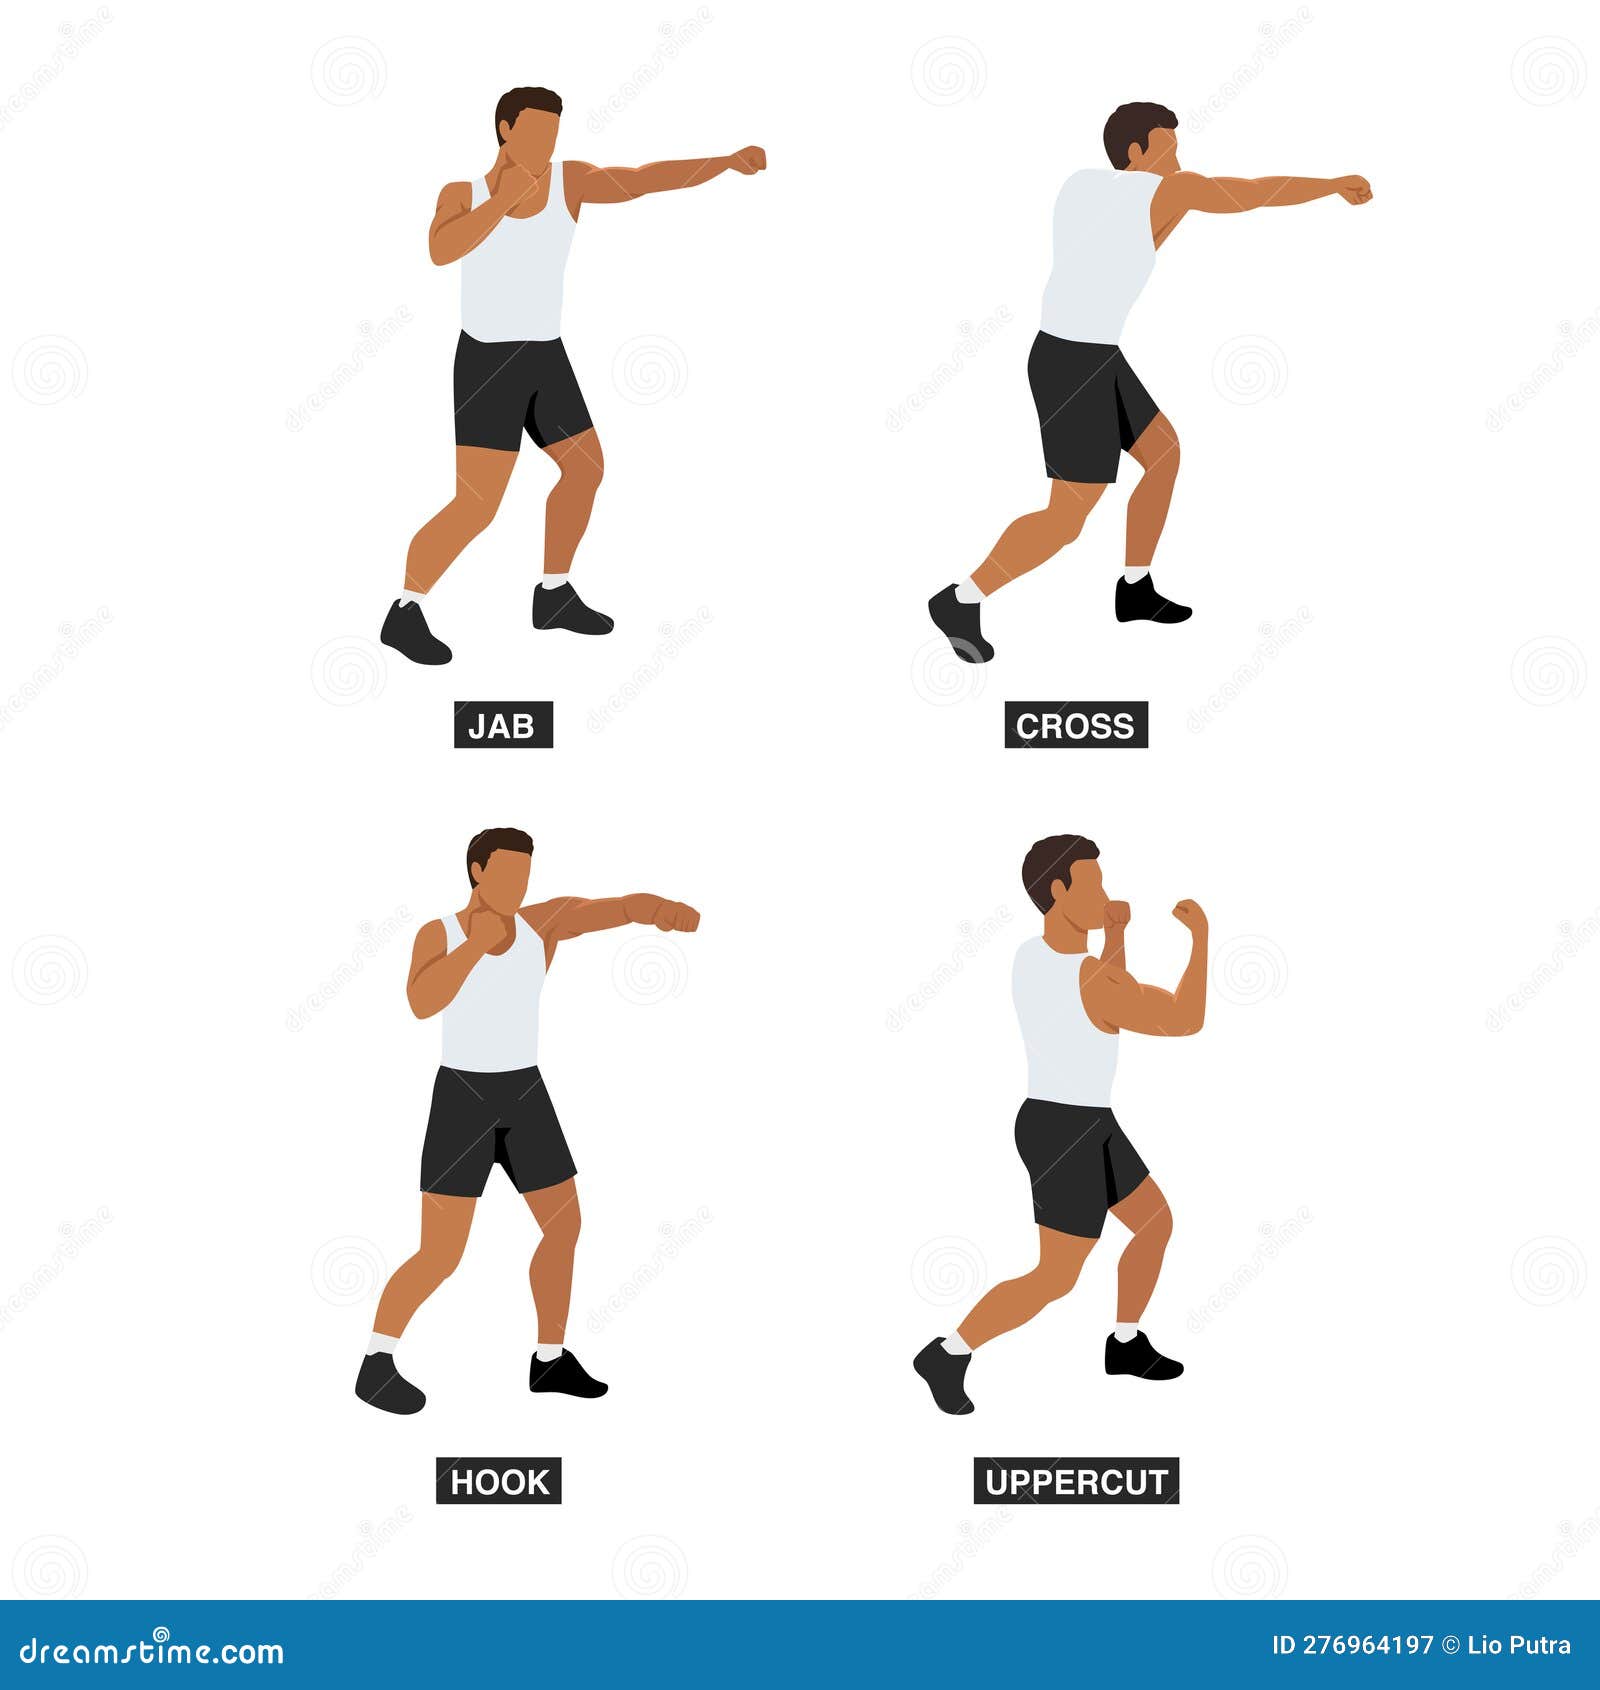 O boxe sombra (shadow boxing) é um método de treinamento de boxe